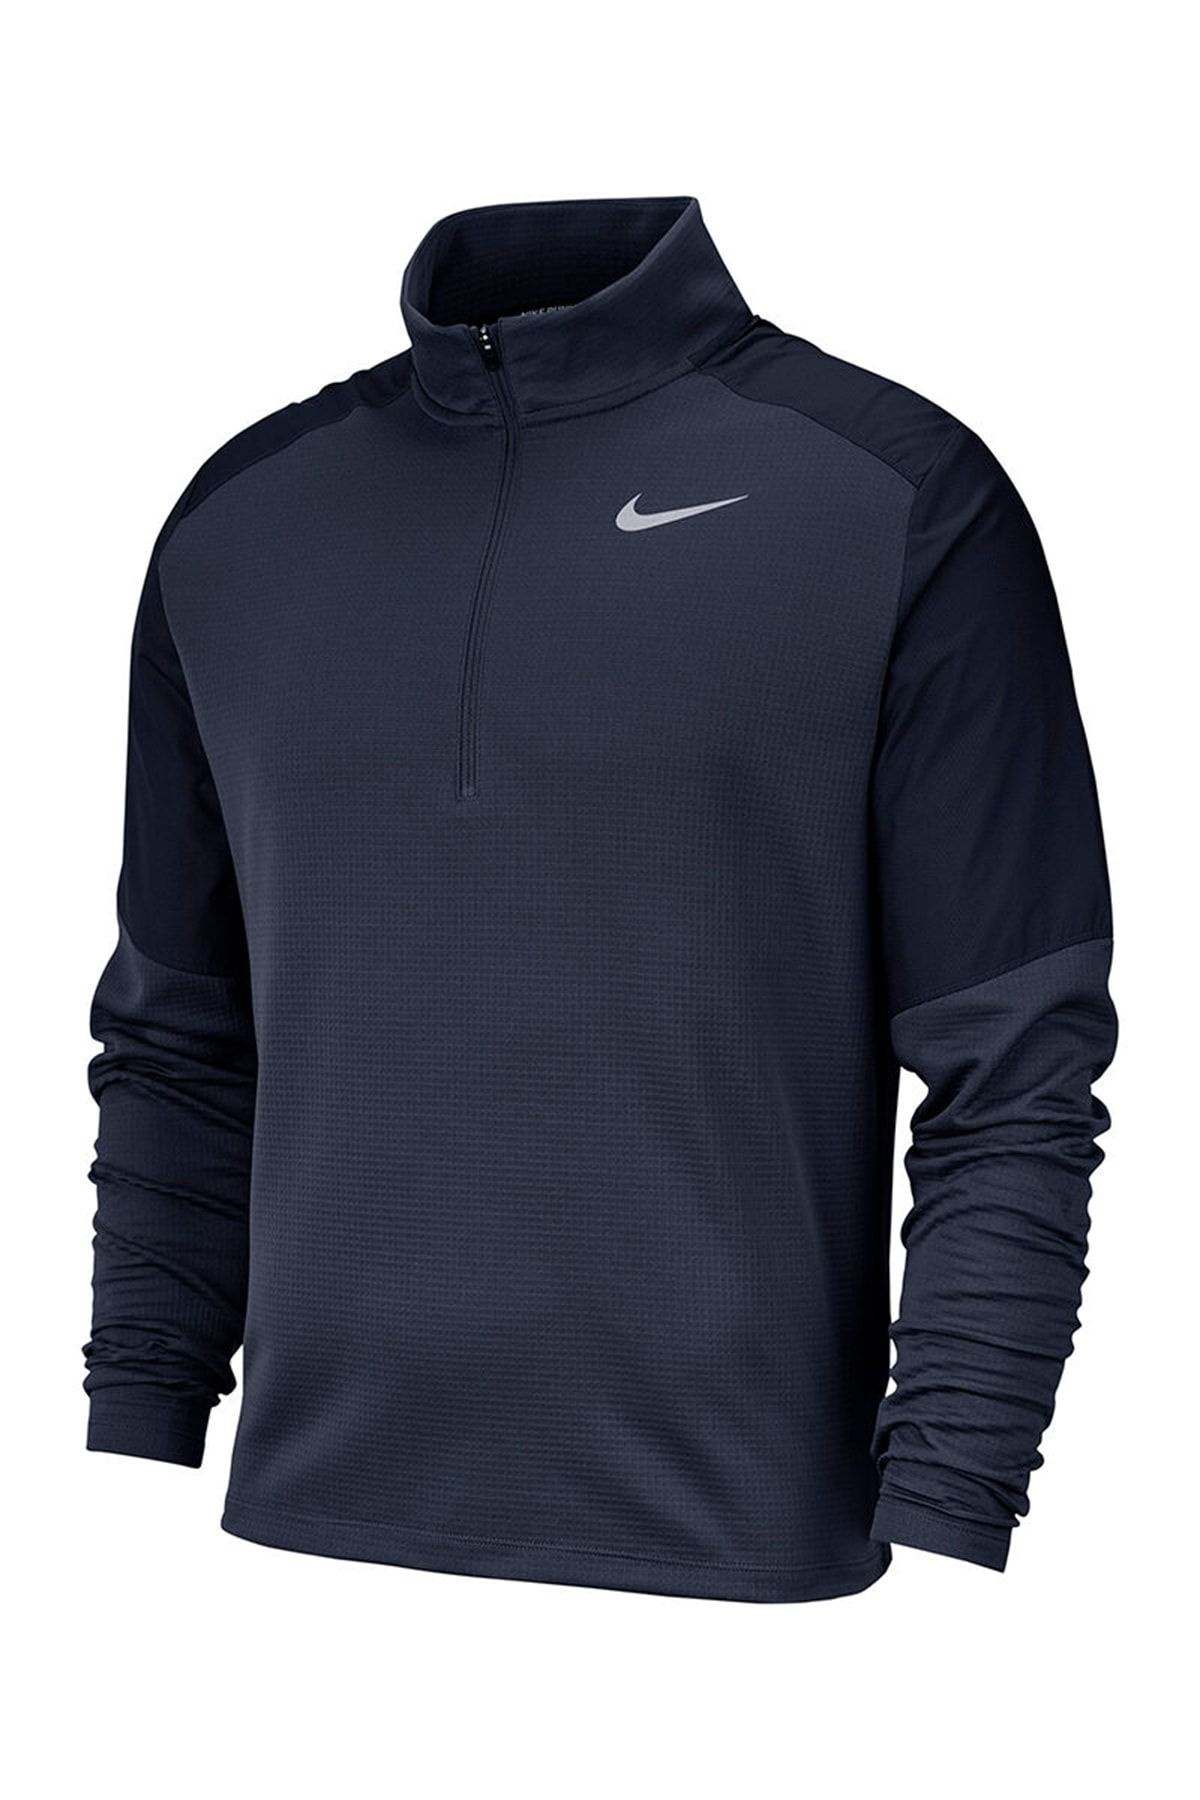 Nike Erkek Sweatshirt - Pacer Top Hybrid - BV4757-451